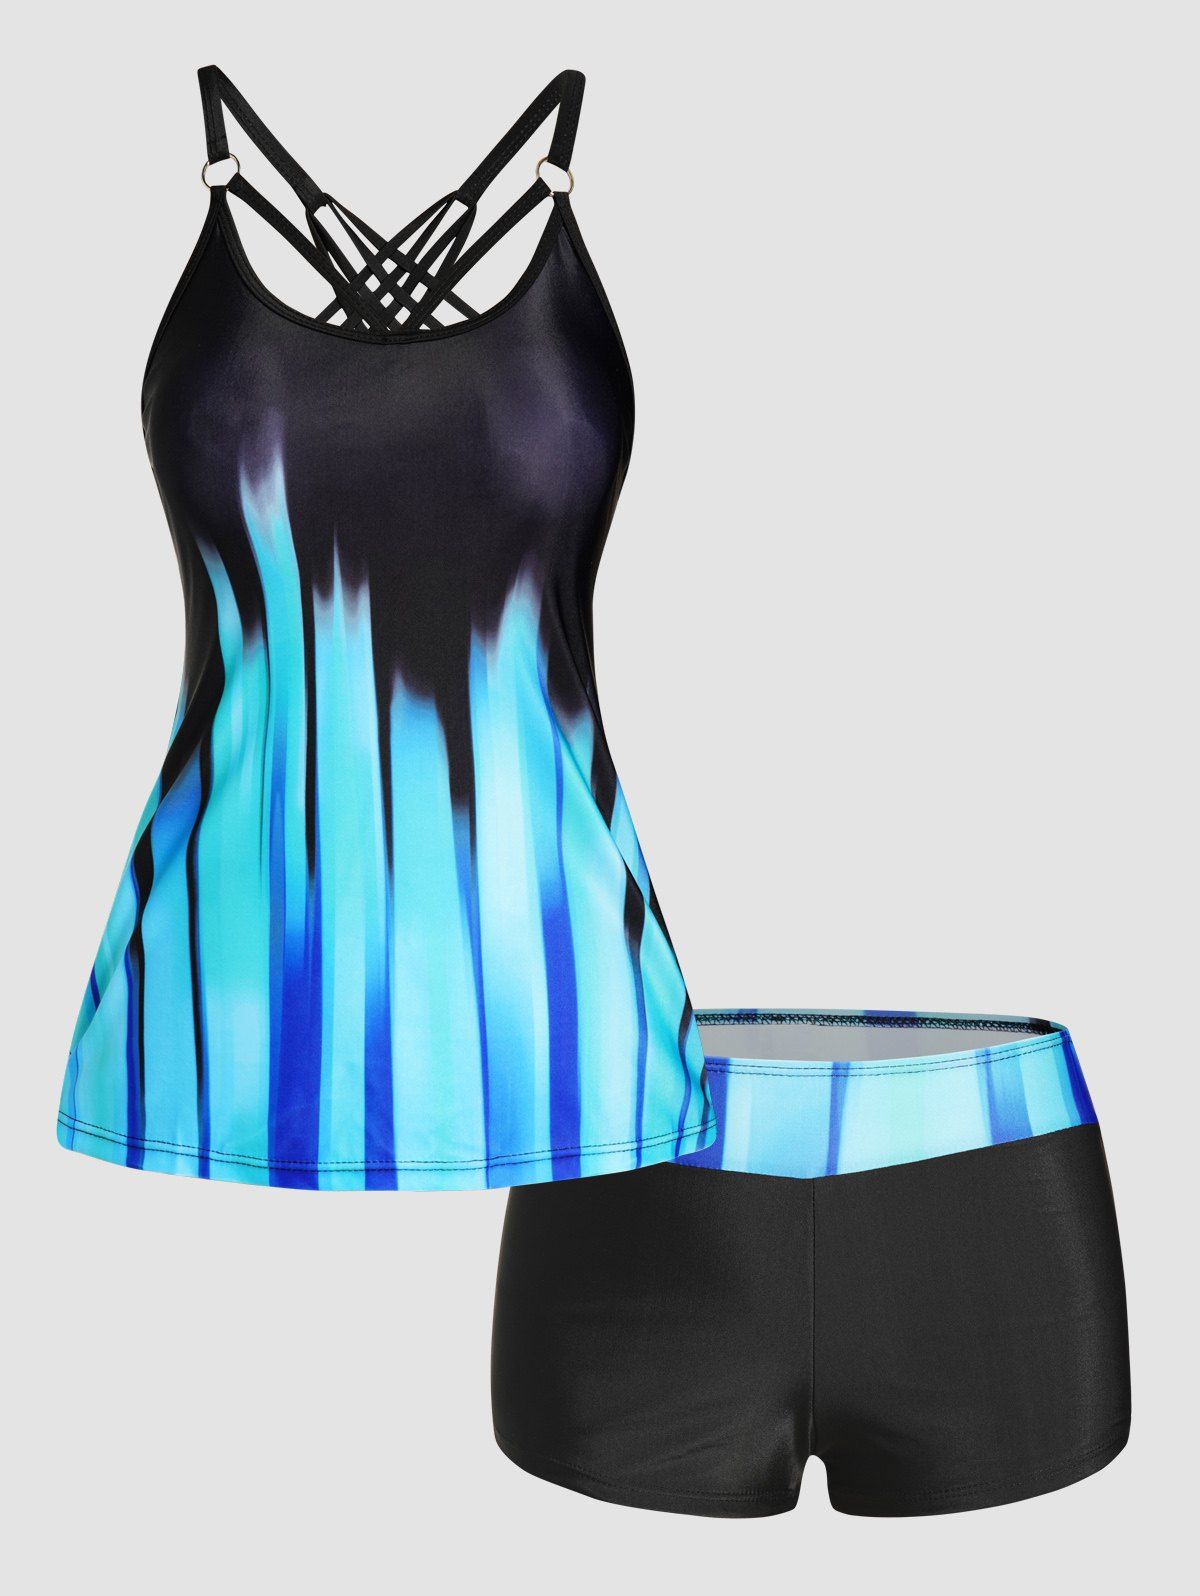 Ombre Stripe Print Tankini Swimsuit Crisscross Padded Tankini Two Piece Swimwear Boyleg Bathing Suit - BLUE XL